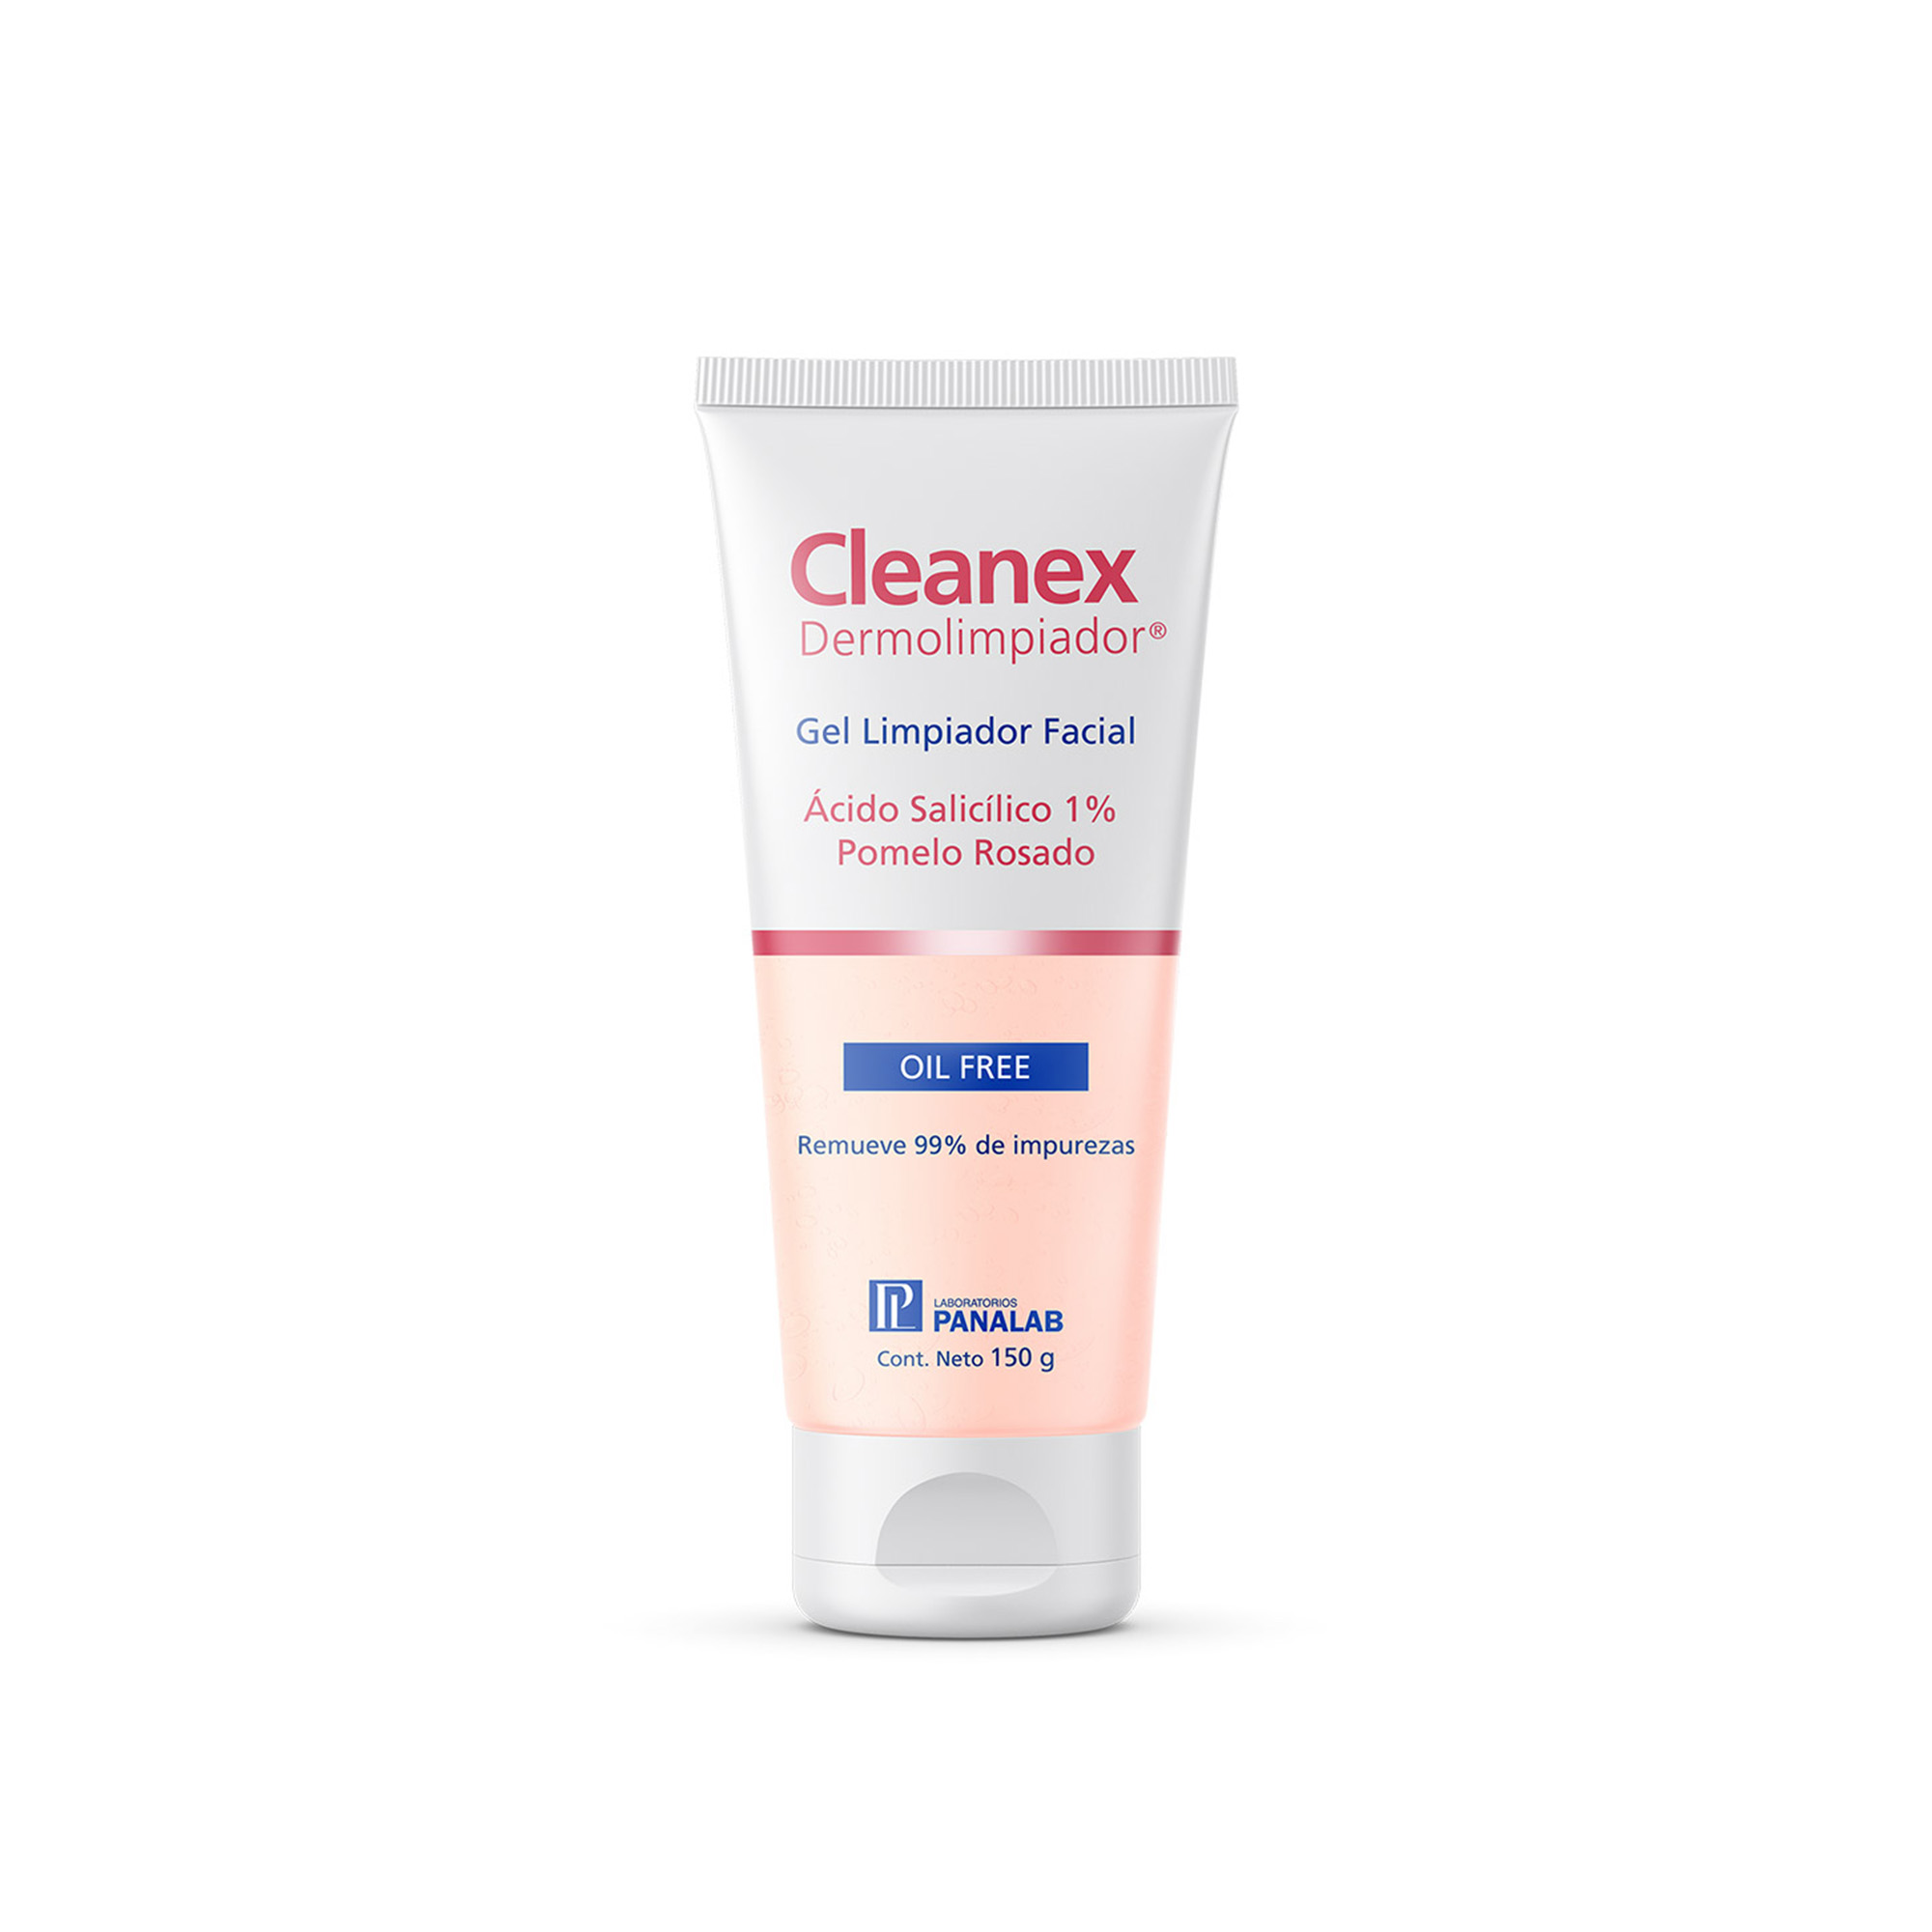 CLEANEX Dermolimpiador® Gel limpiador facial – Tienda Panalab